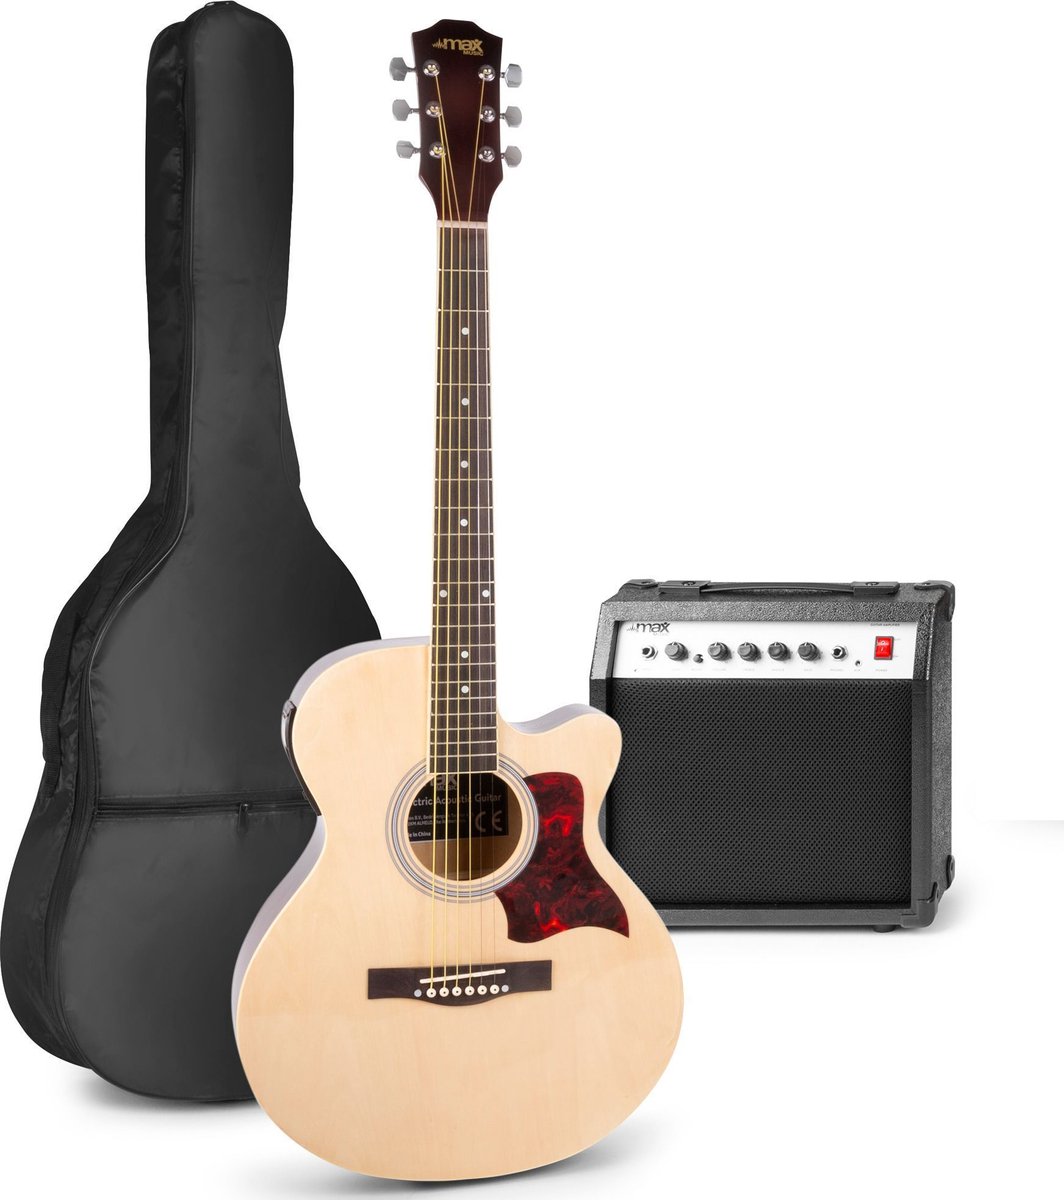 Elektrisch akoestische gitaar - MAX ShowKit gitaarset met 40W gitaar versterker, gitaar stemapparaat, gitaartas en plectrum - Naturel (hout)